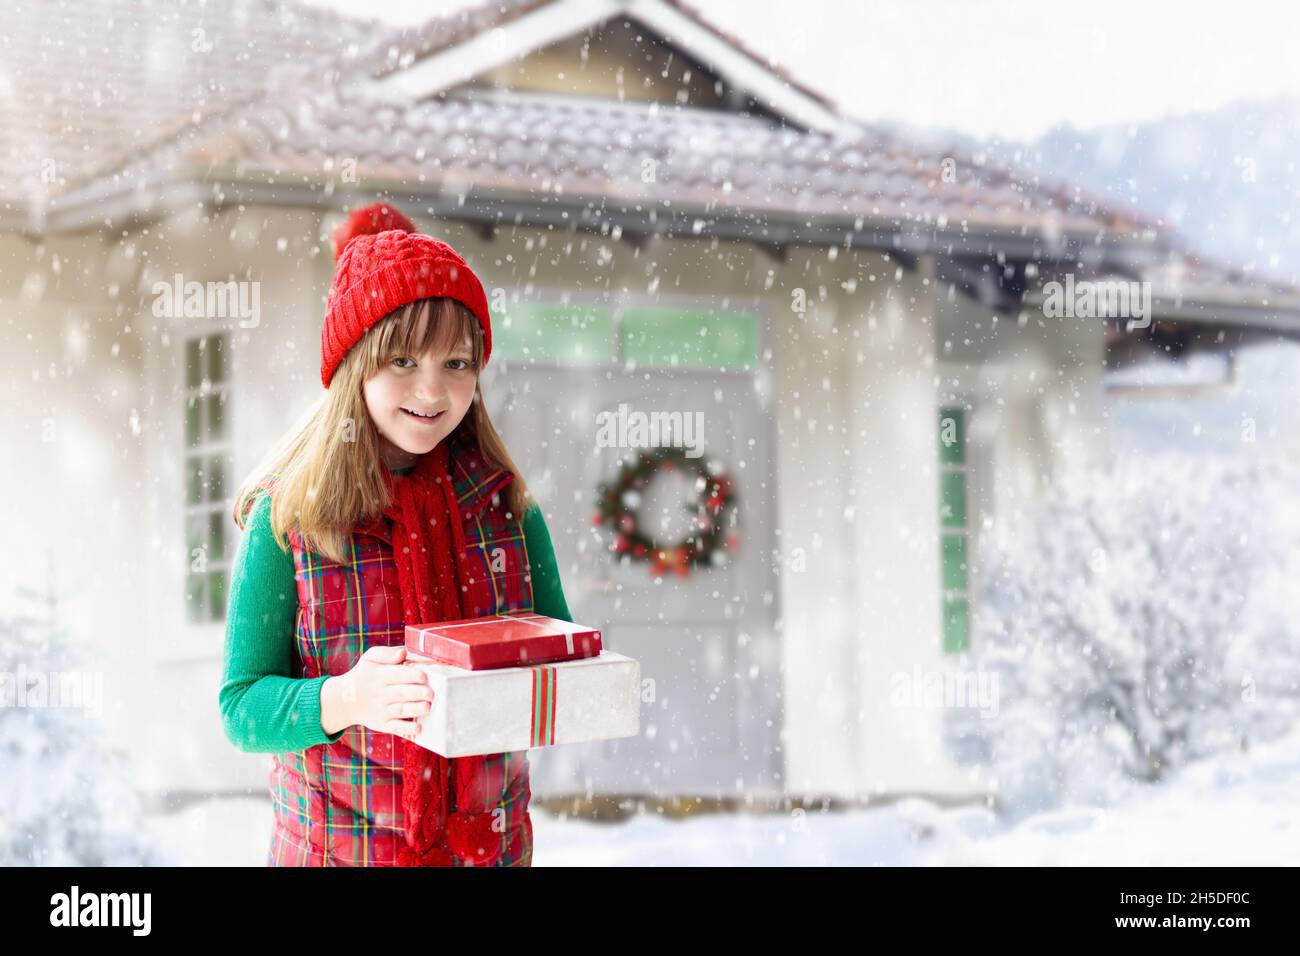 Enfant dans un chapeau rouge jouant dans la neige pendant les vacances de Noël.Cadeau de Noël en famille.En hiver, en plein air.Les enfants jouent dans un parc enneigé. Banque D'Images